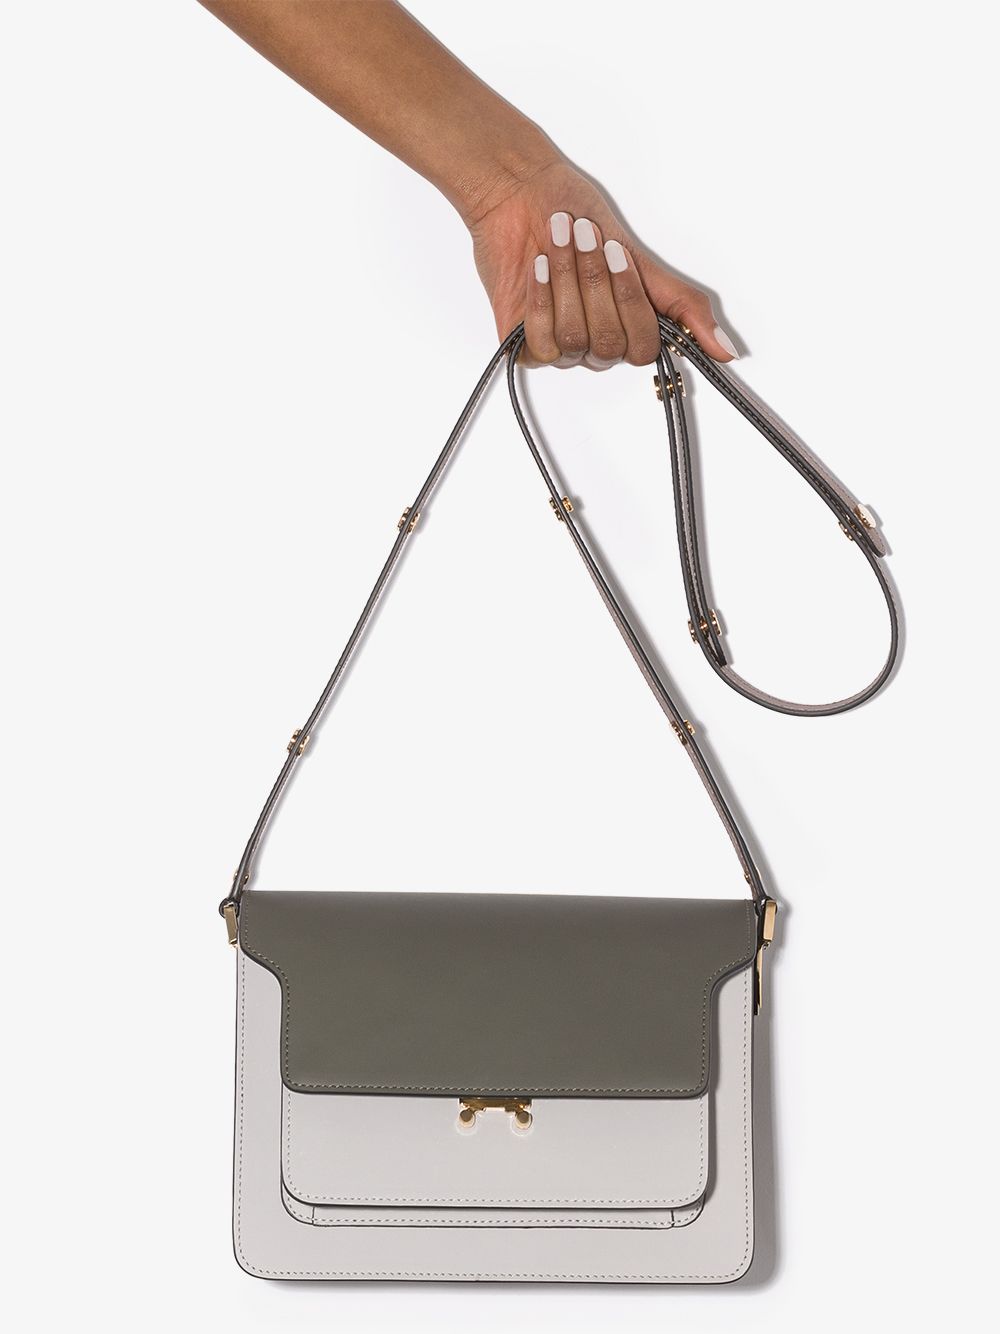 Marni Trunk Bag, $2,150, farfetch.com